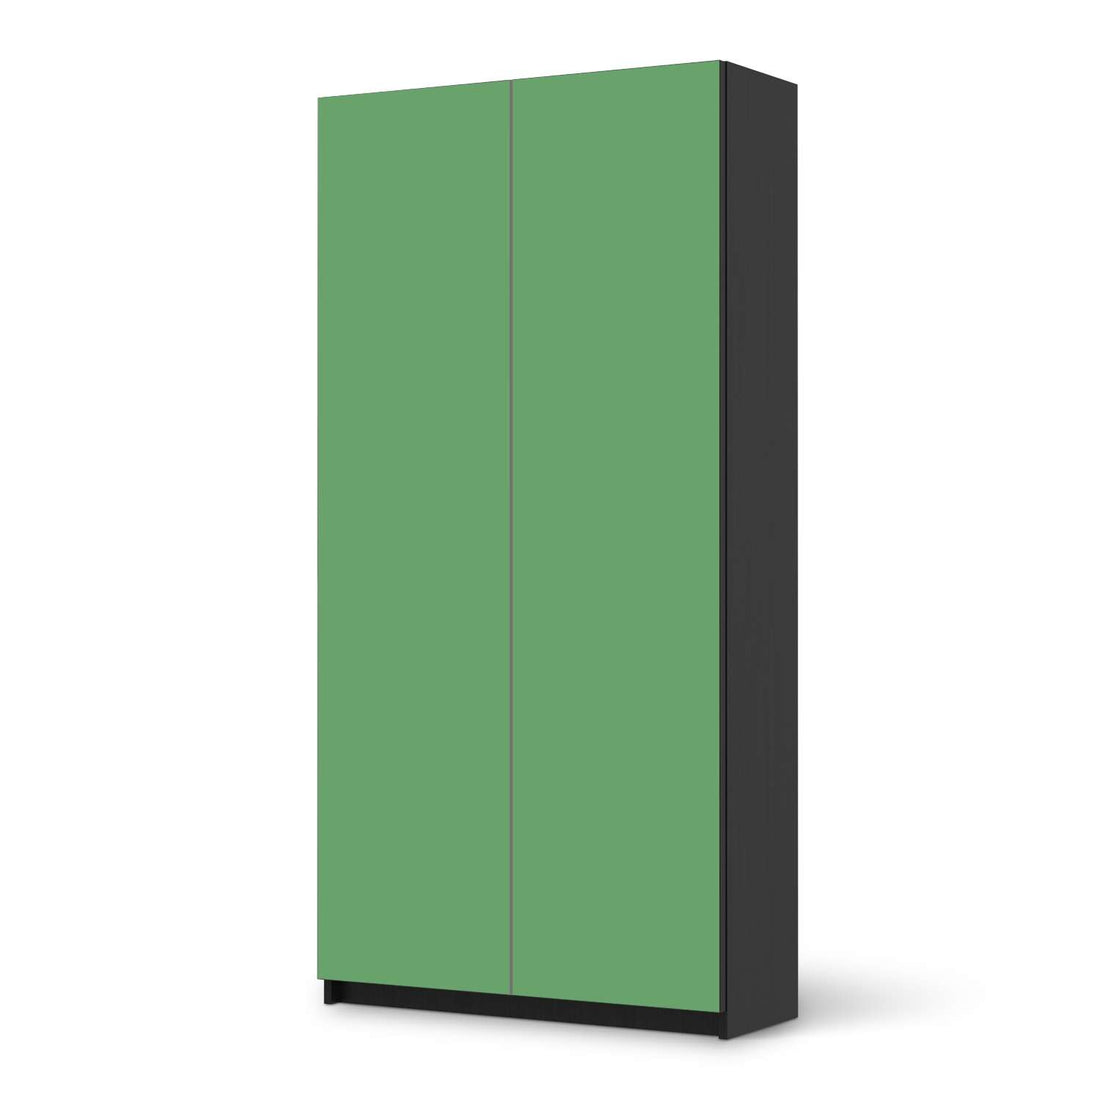 Klebefolie für Möbel Grün Light - IKEA Pax Schrank 201 cm Höhe - 2 Türen - schwarz